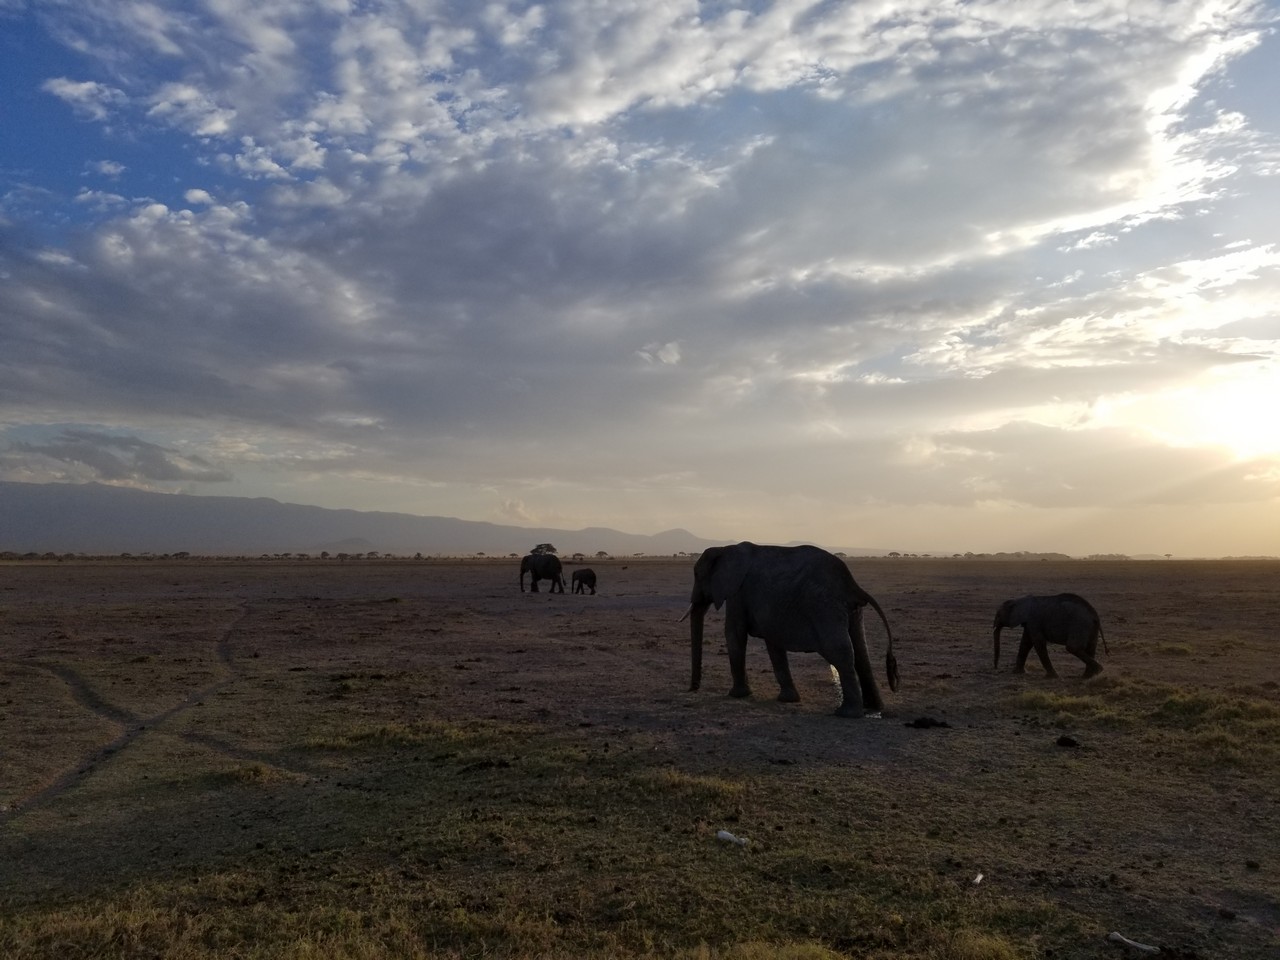 elephants walking in a field